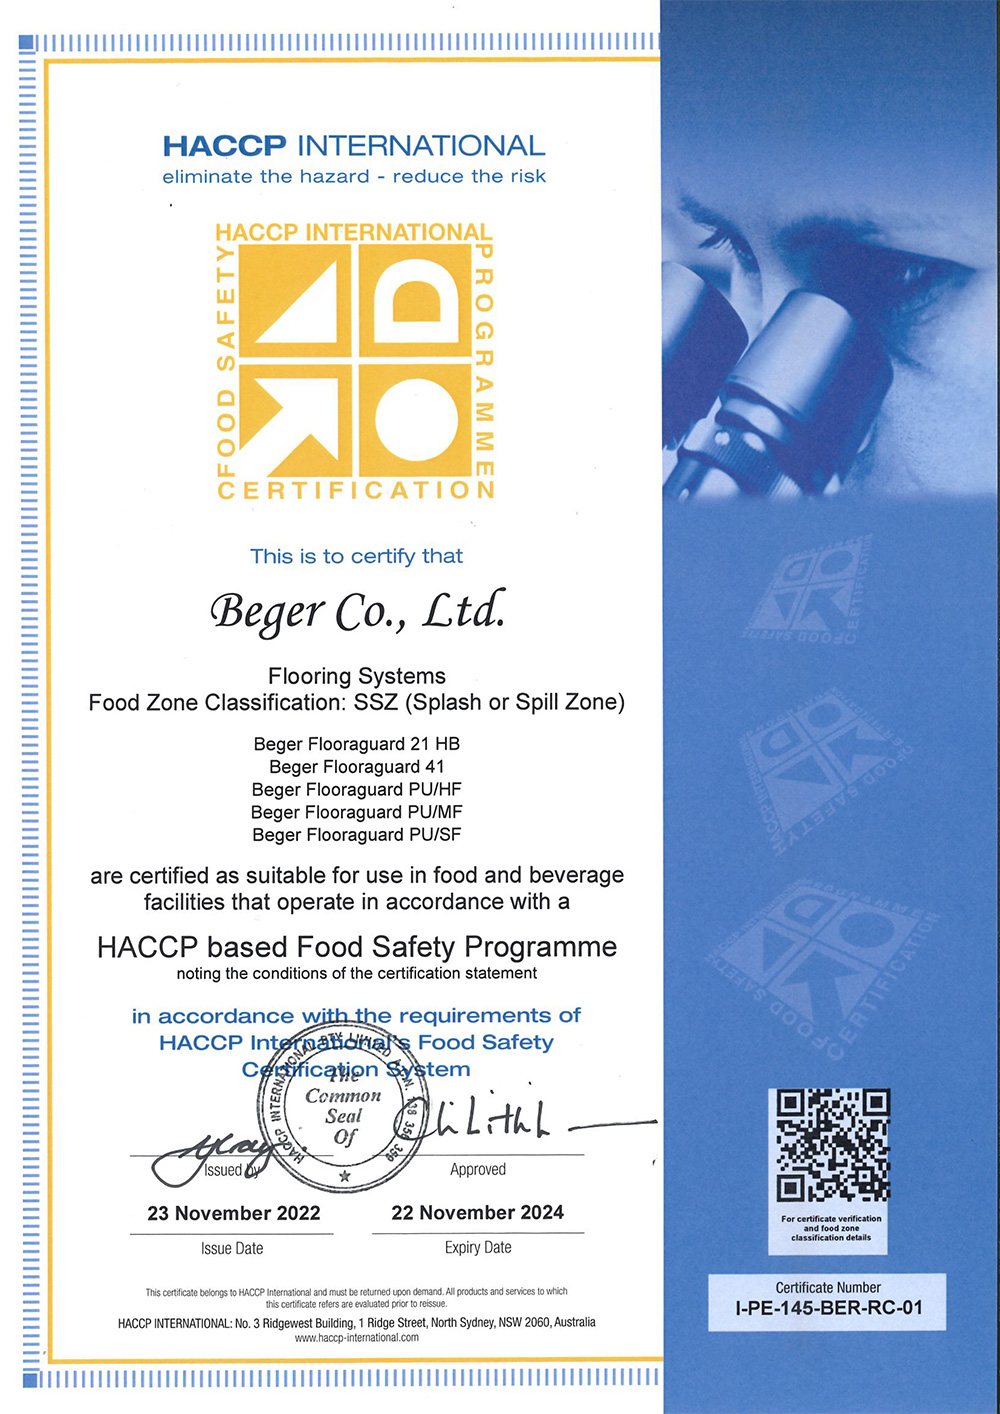 ใบรับรองความปลอดภัยสำหรับการใช้ในงานพื้น ของอุตสาหกรรมอาหารและเครื่องดื่ม HACCP